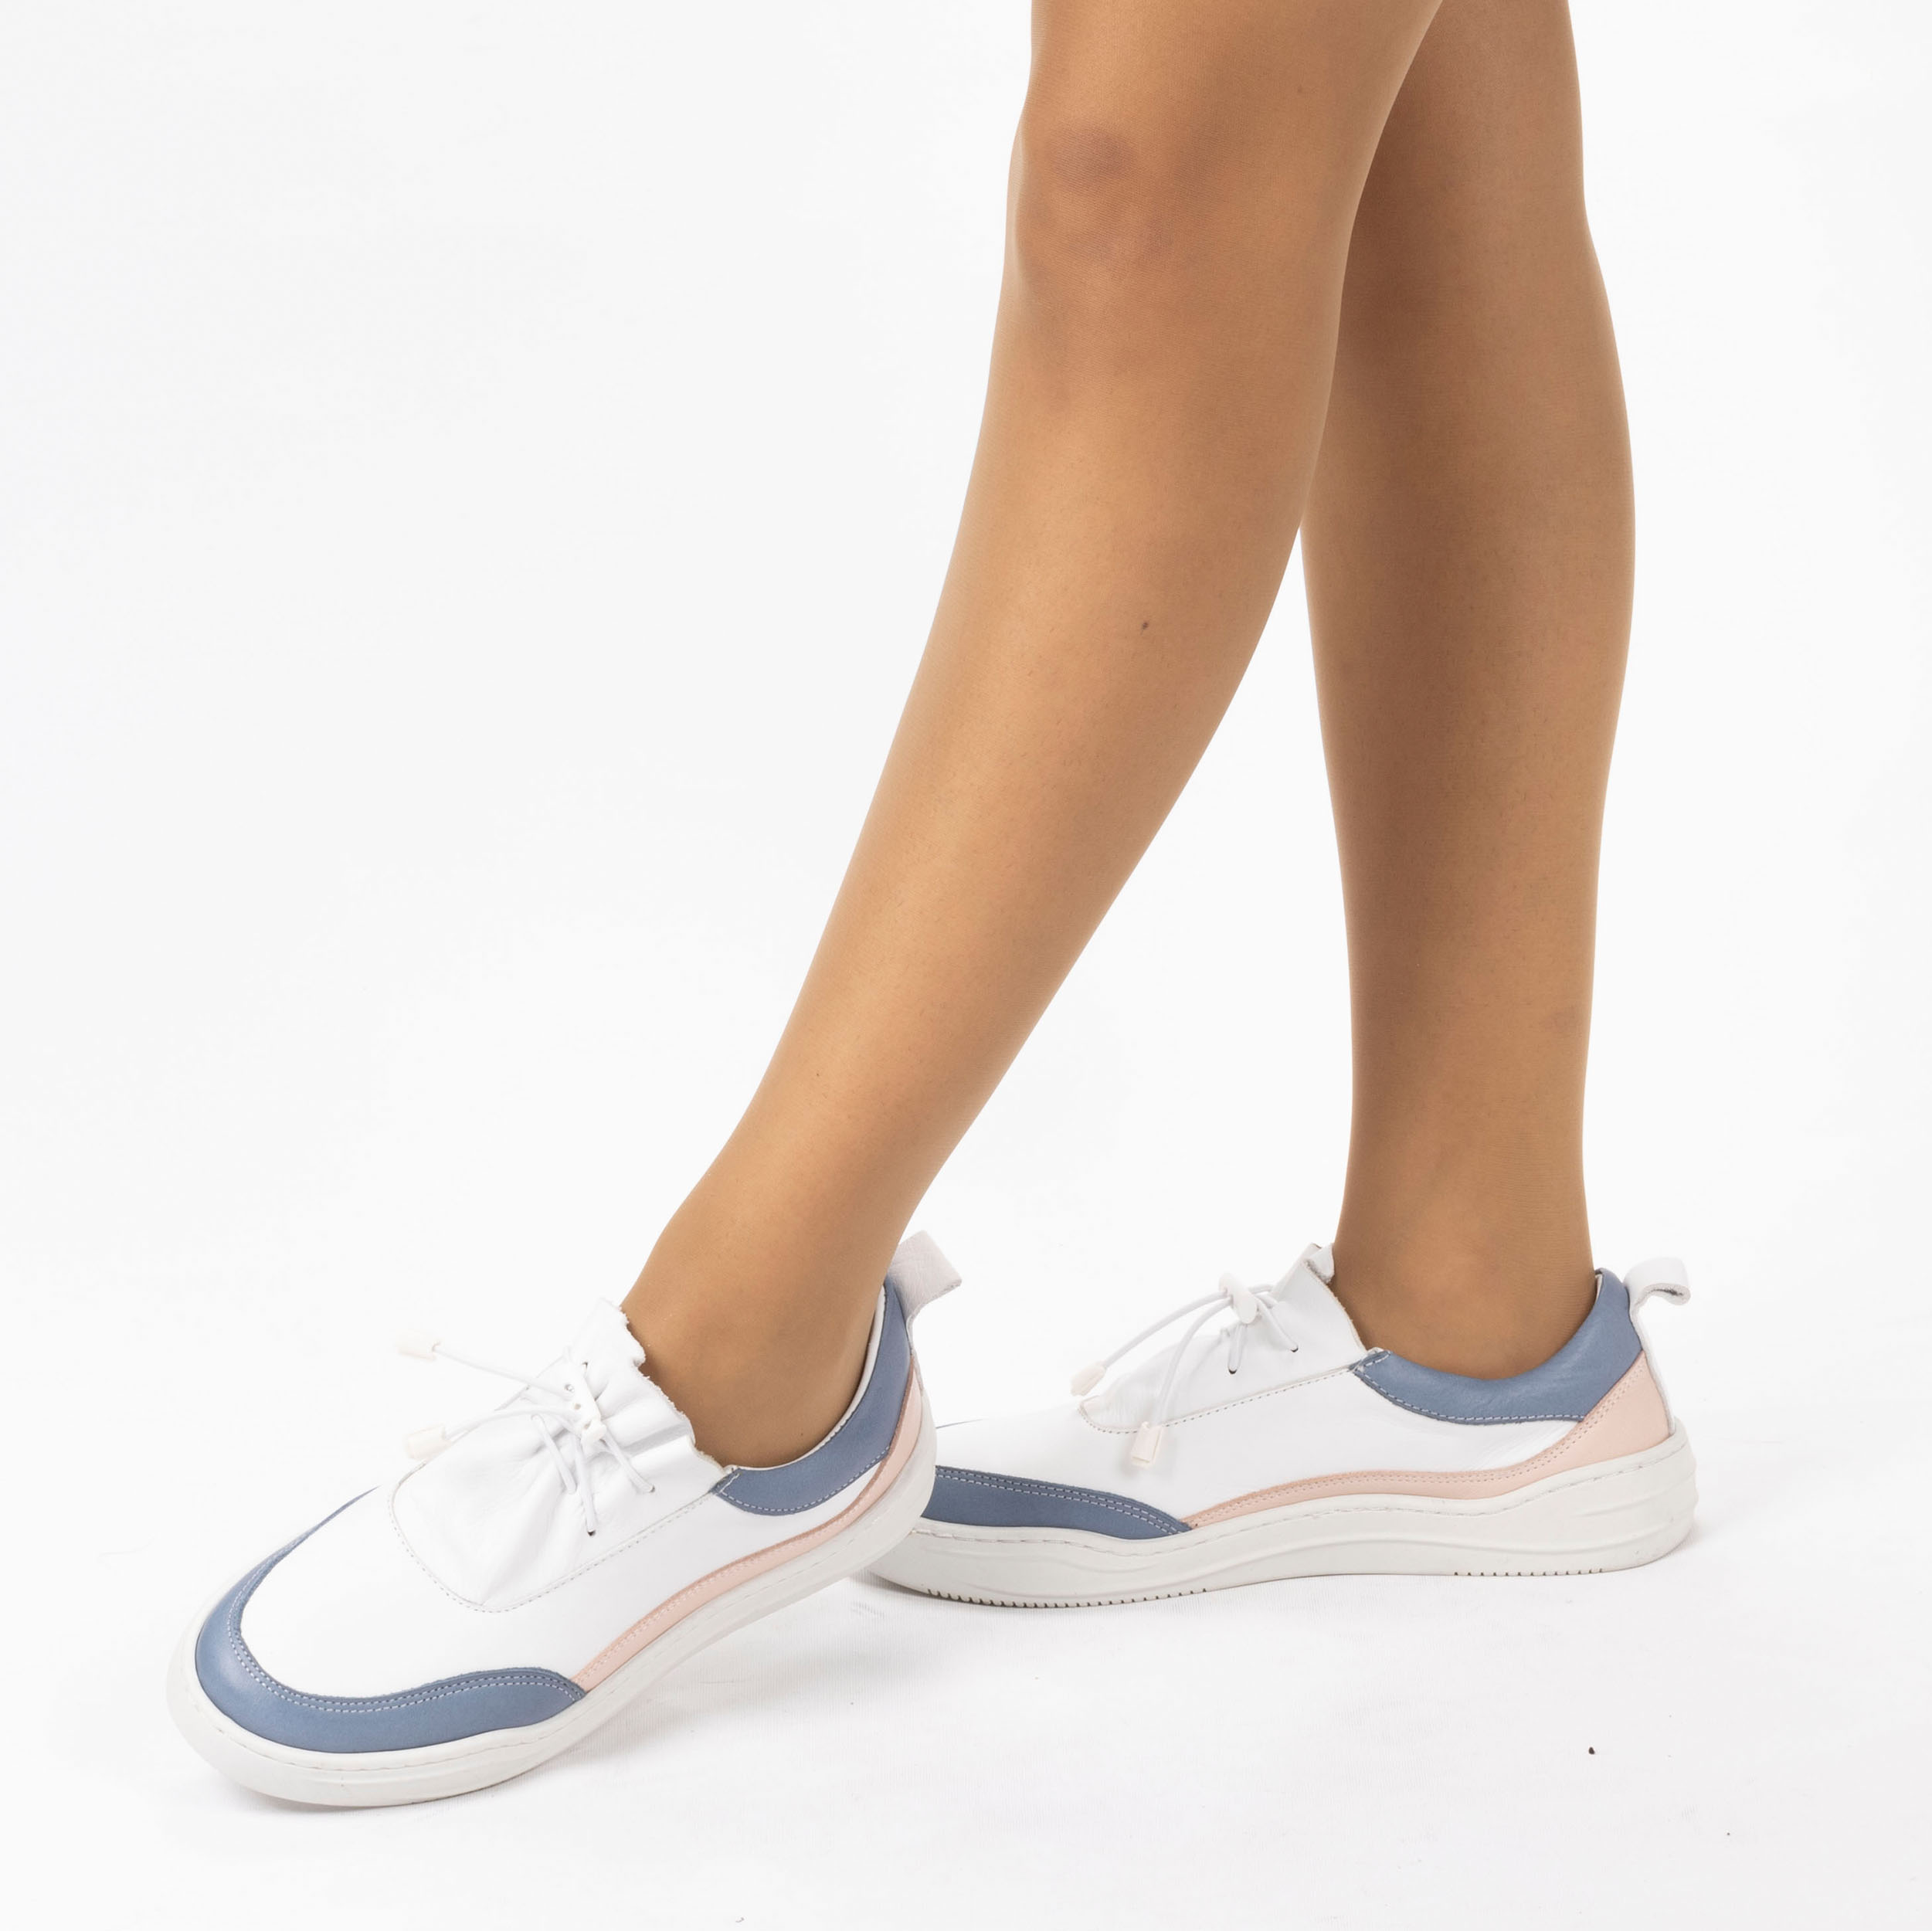 Kadın Hakiki Deri  Günlük Spor Ayakkabı / Sneakers, Renk: Mavi - Pembe, Beden: 38